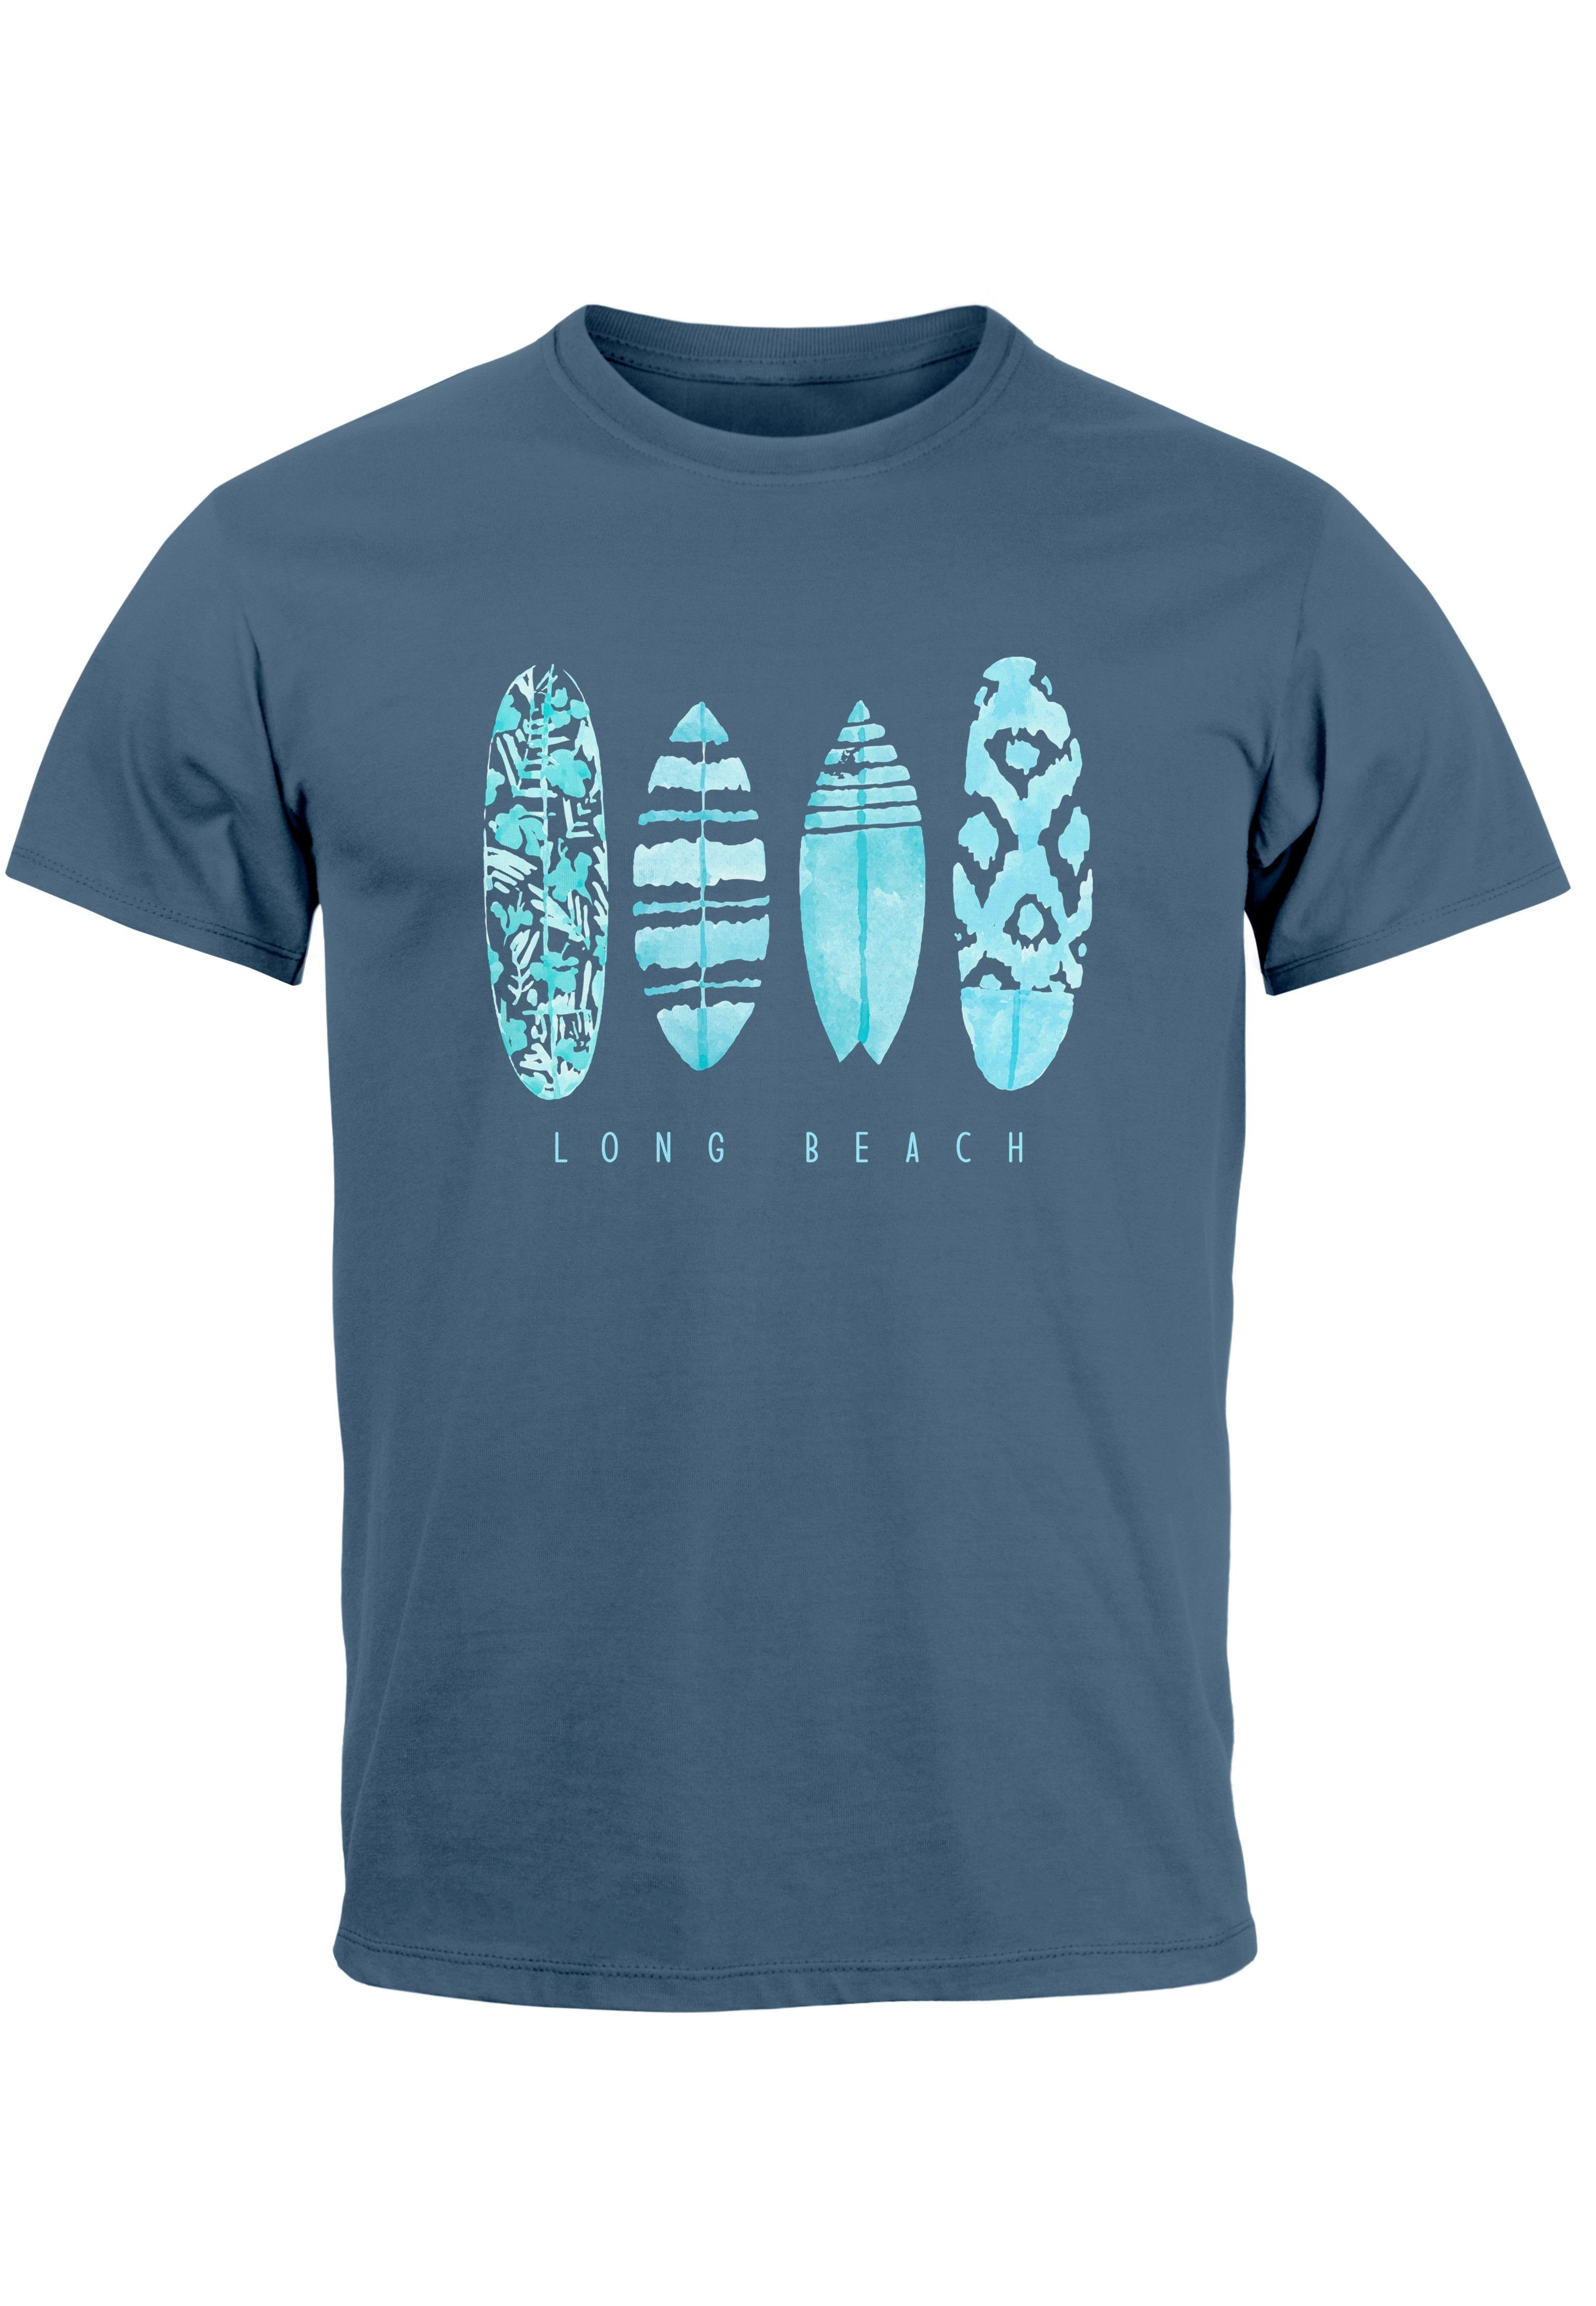 Neverless Print-Shirt Herren T-Shirt Surfing Fashion Aufdruck Long Beach Surfboard Sommer St mit Print blau türkis